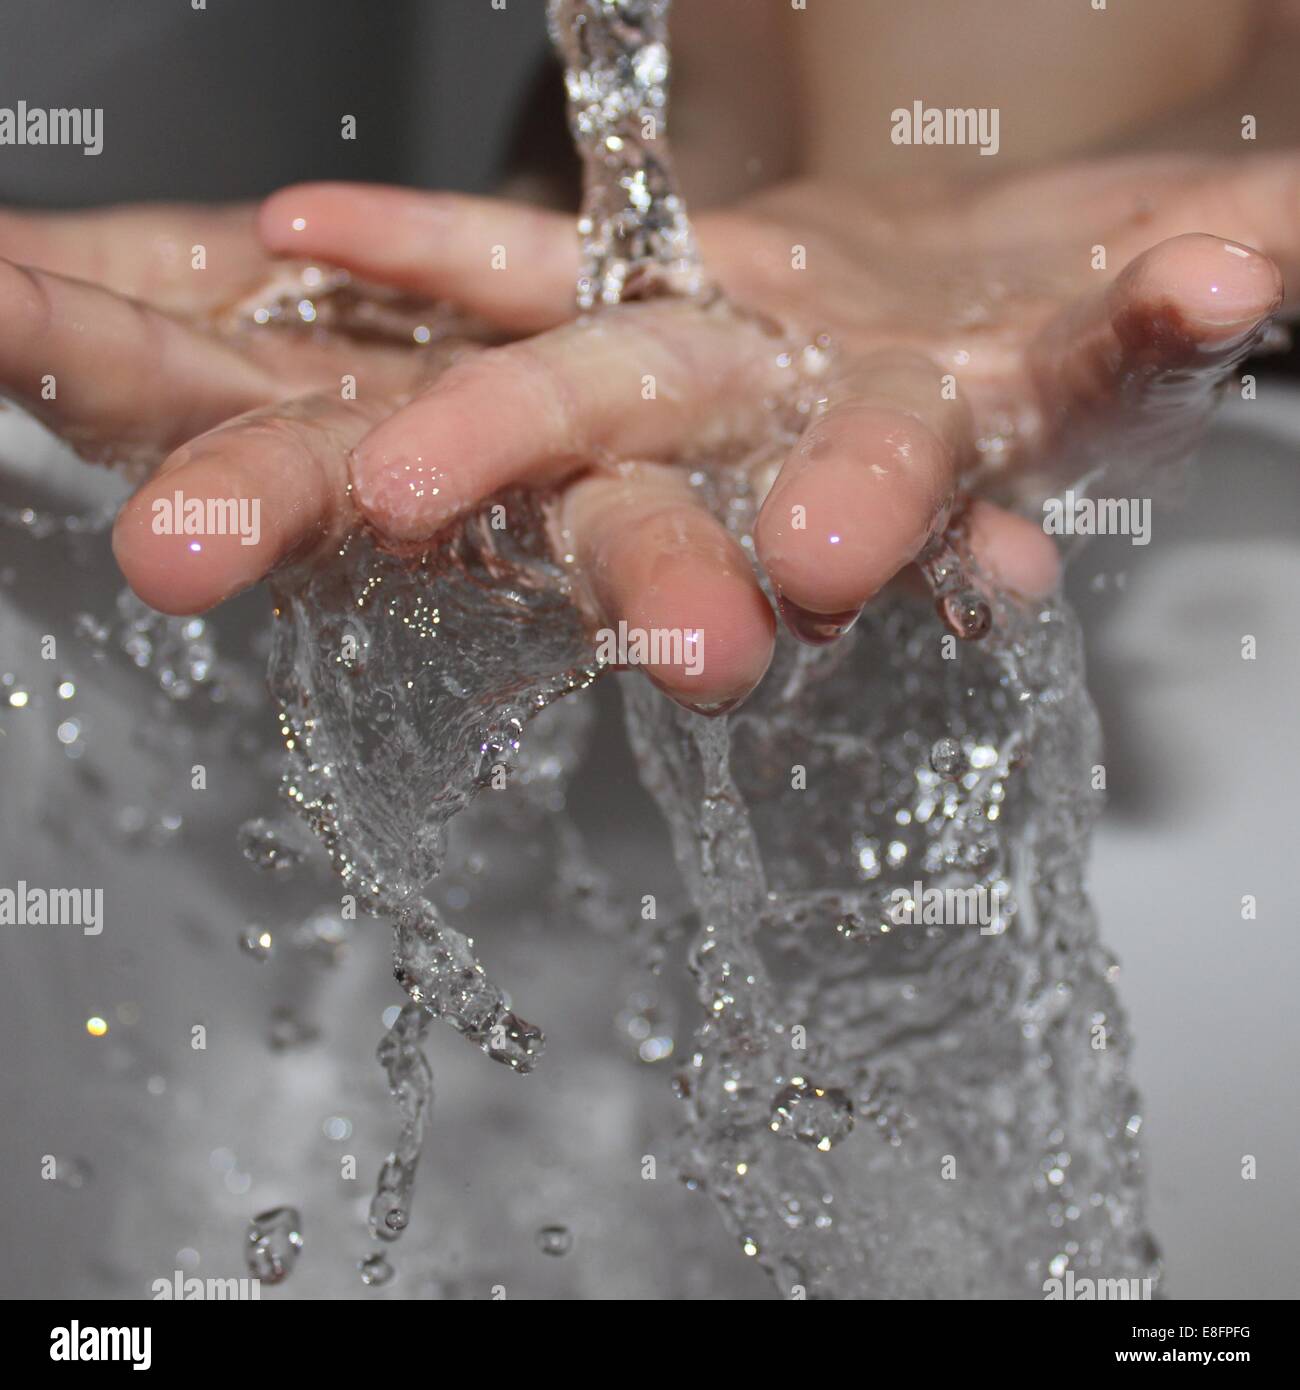 Nahaufnahme einer Person waschen die Hände unter fließendem Wasser Stockfoto